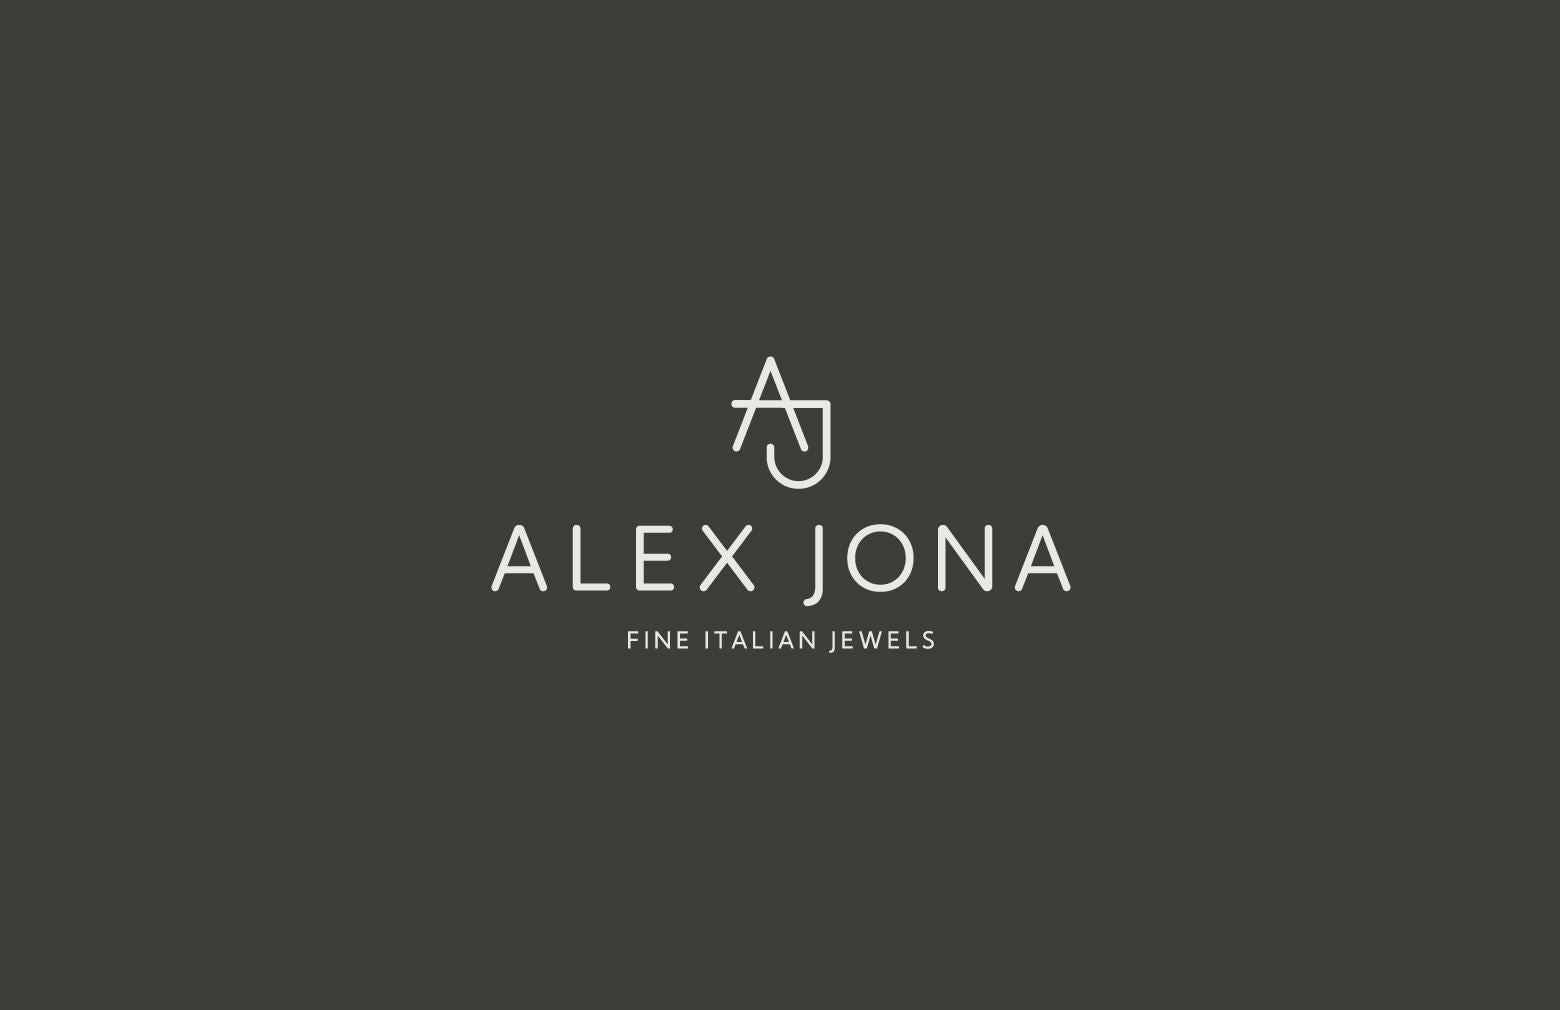 Alex Jona White Diamond White Gold Criss Cross Stud Earrings For Sale 5